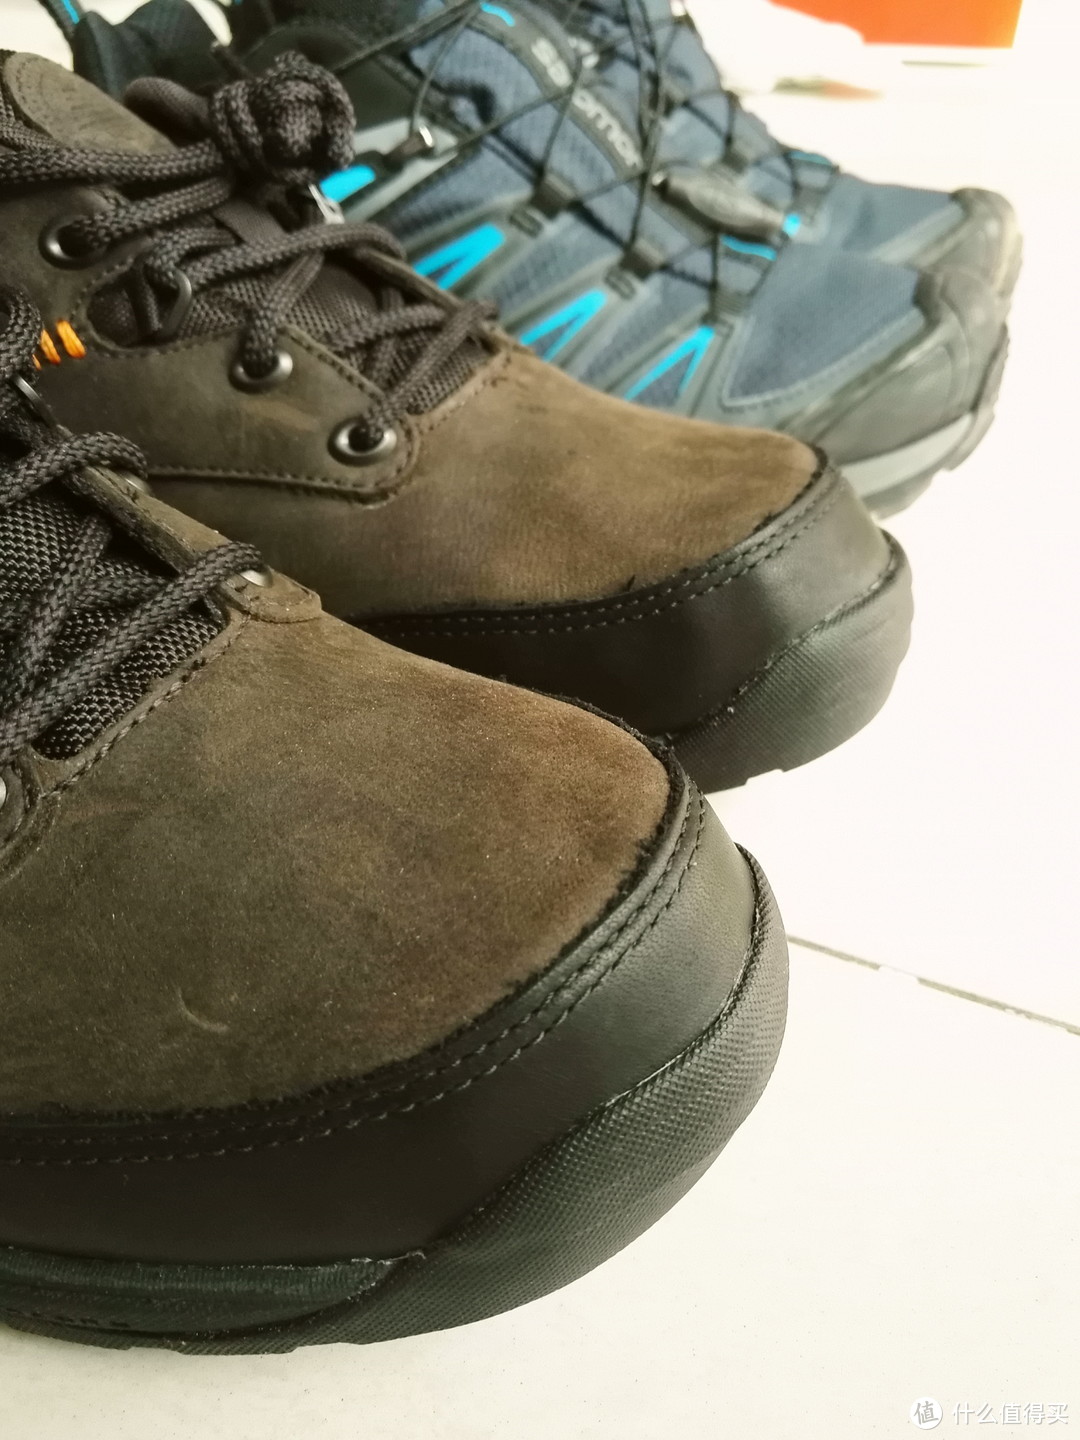 期待已久的全能户外跑鞋—Salomon 萨洛蒙 登山徒步鞋X ULTRA 3 评测报告